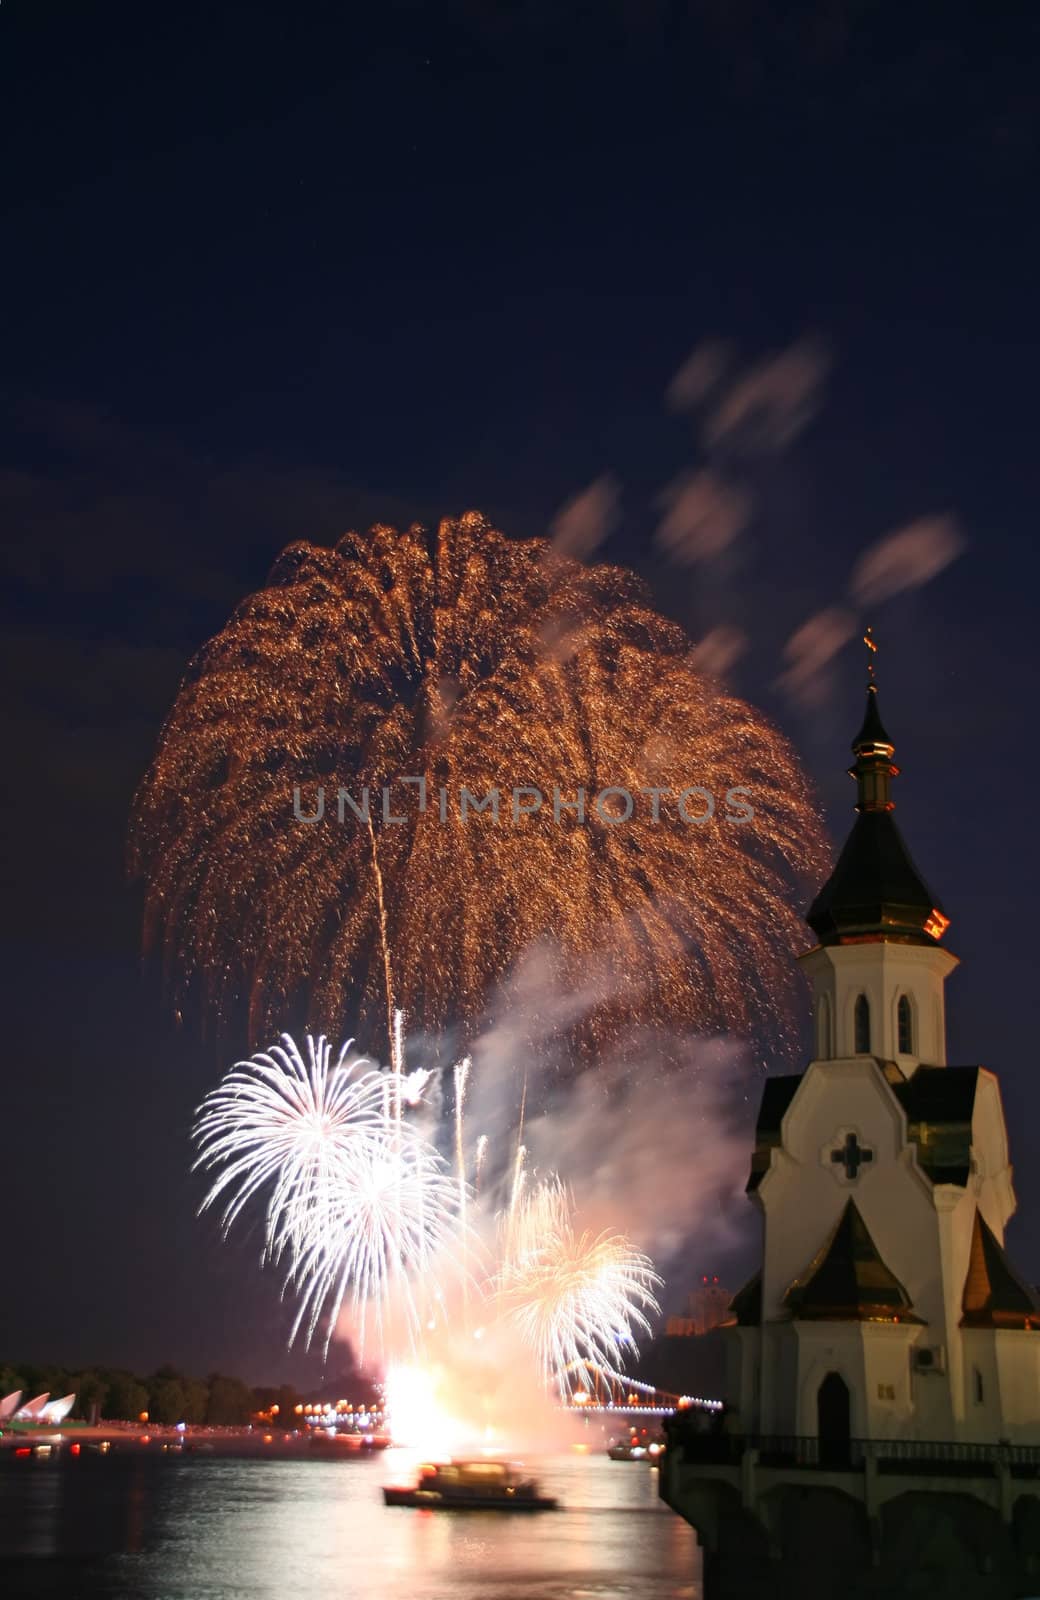 International firework festival on river Dniepr, Kiev, Ukraine.